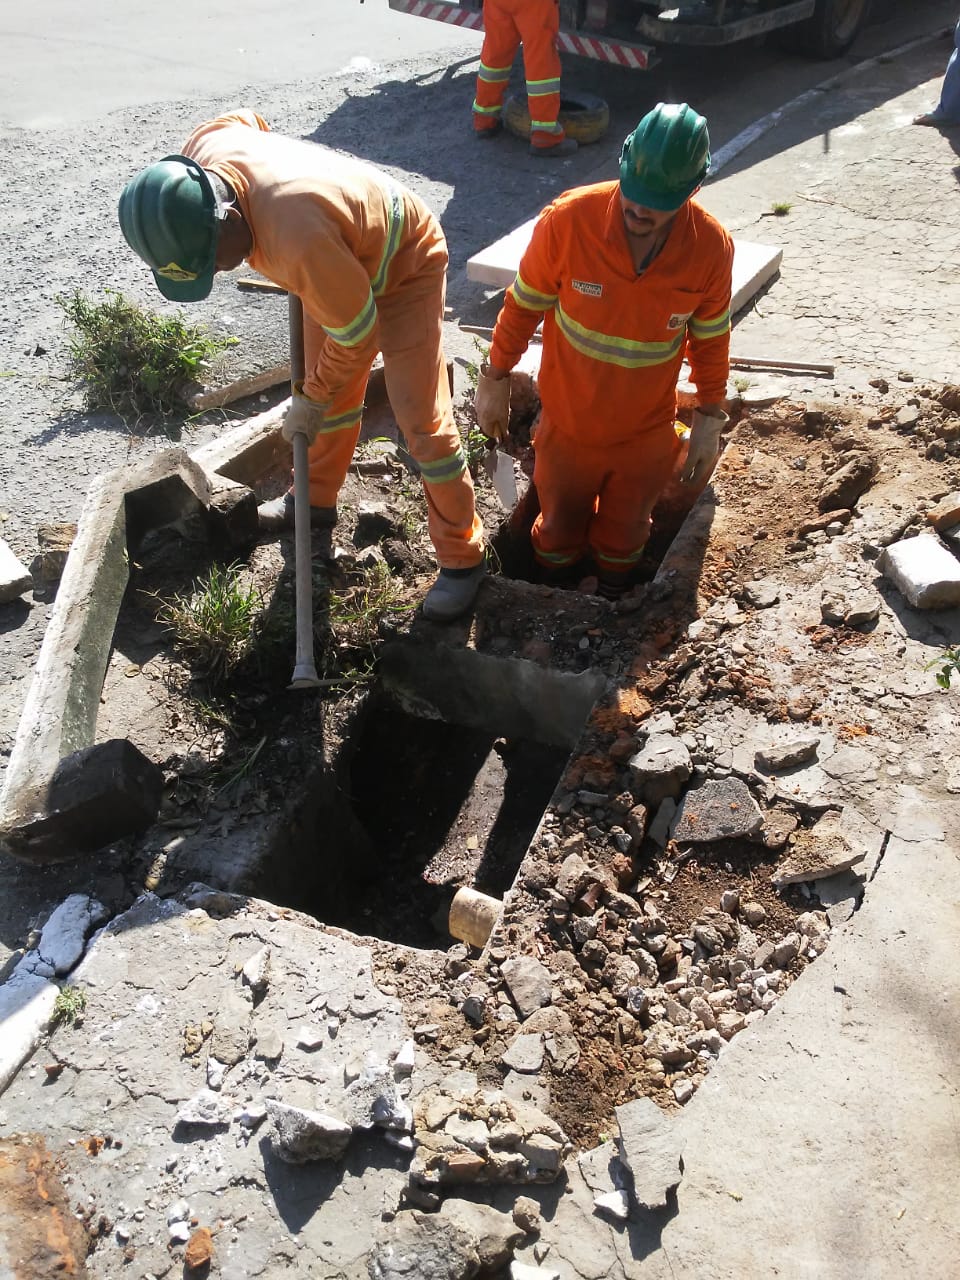 #PraCegoVer - Trabalhadores da Subprefeitura retiram a boca-de-lobo quebrada para instalação de uma nova. Há pedras e pedaços de cimento espalhados pelo chão.